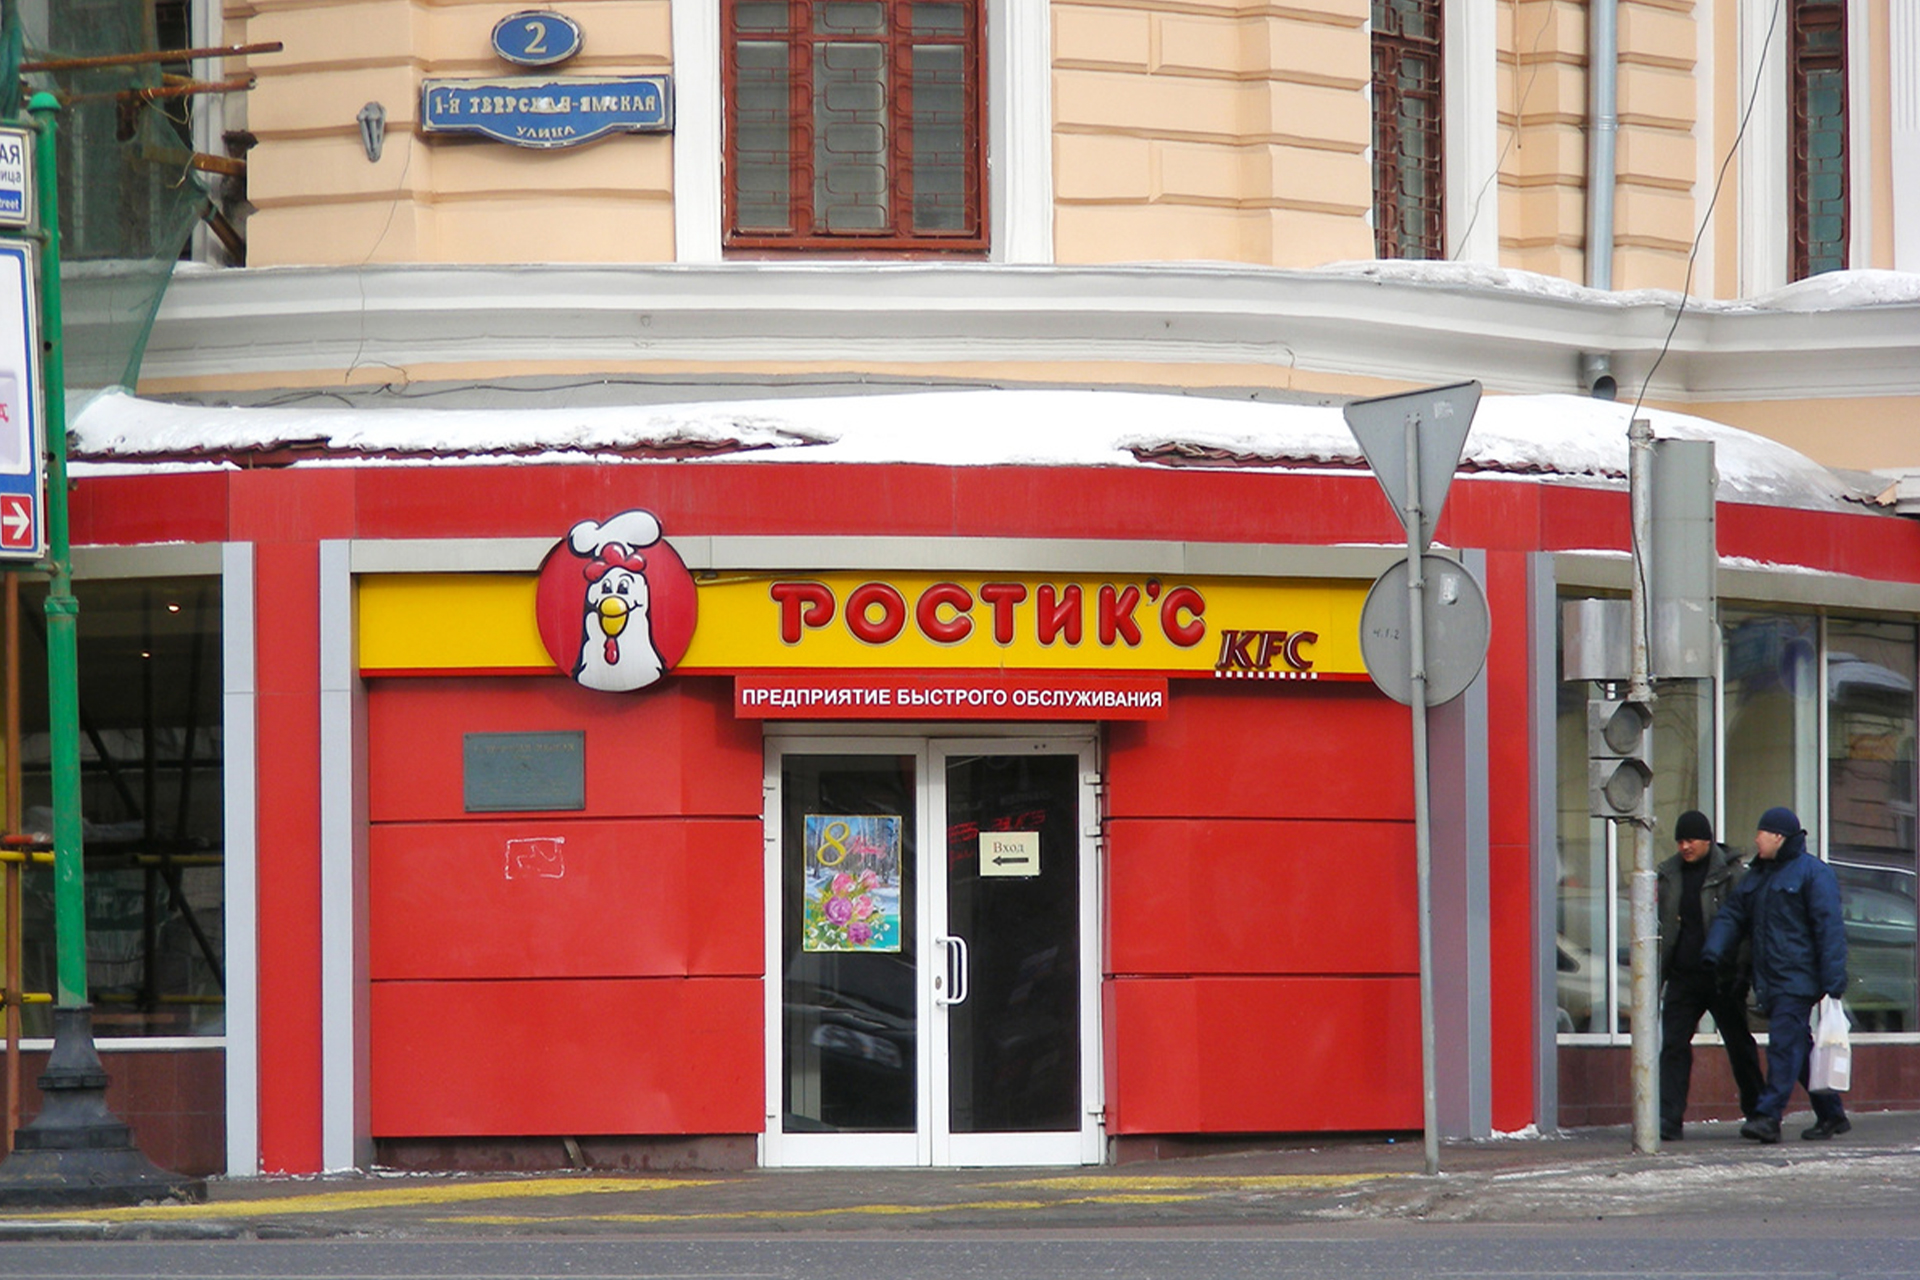 Ресторан «Ростик'с» на 1-й Тверской -Ямской улице в Москве, 2011 год